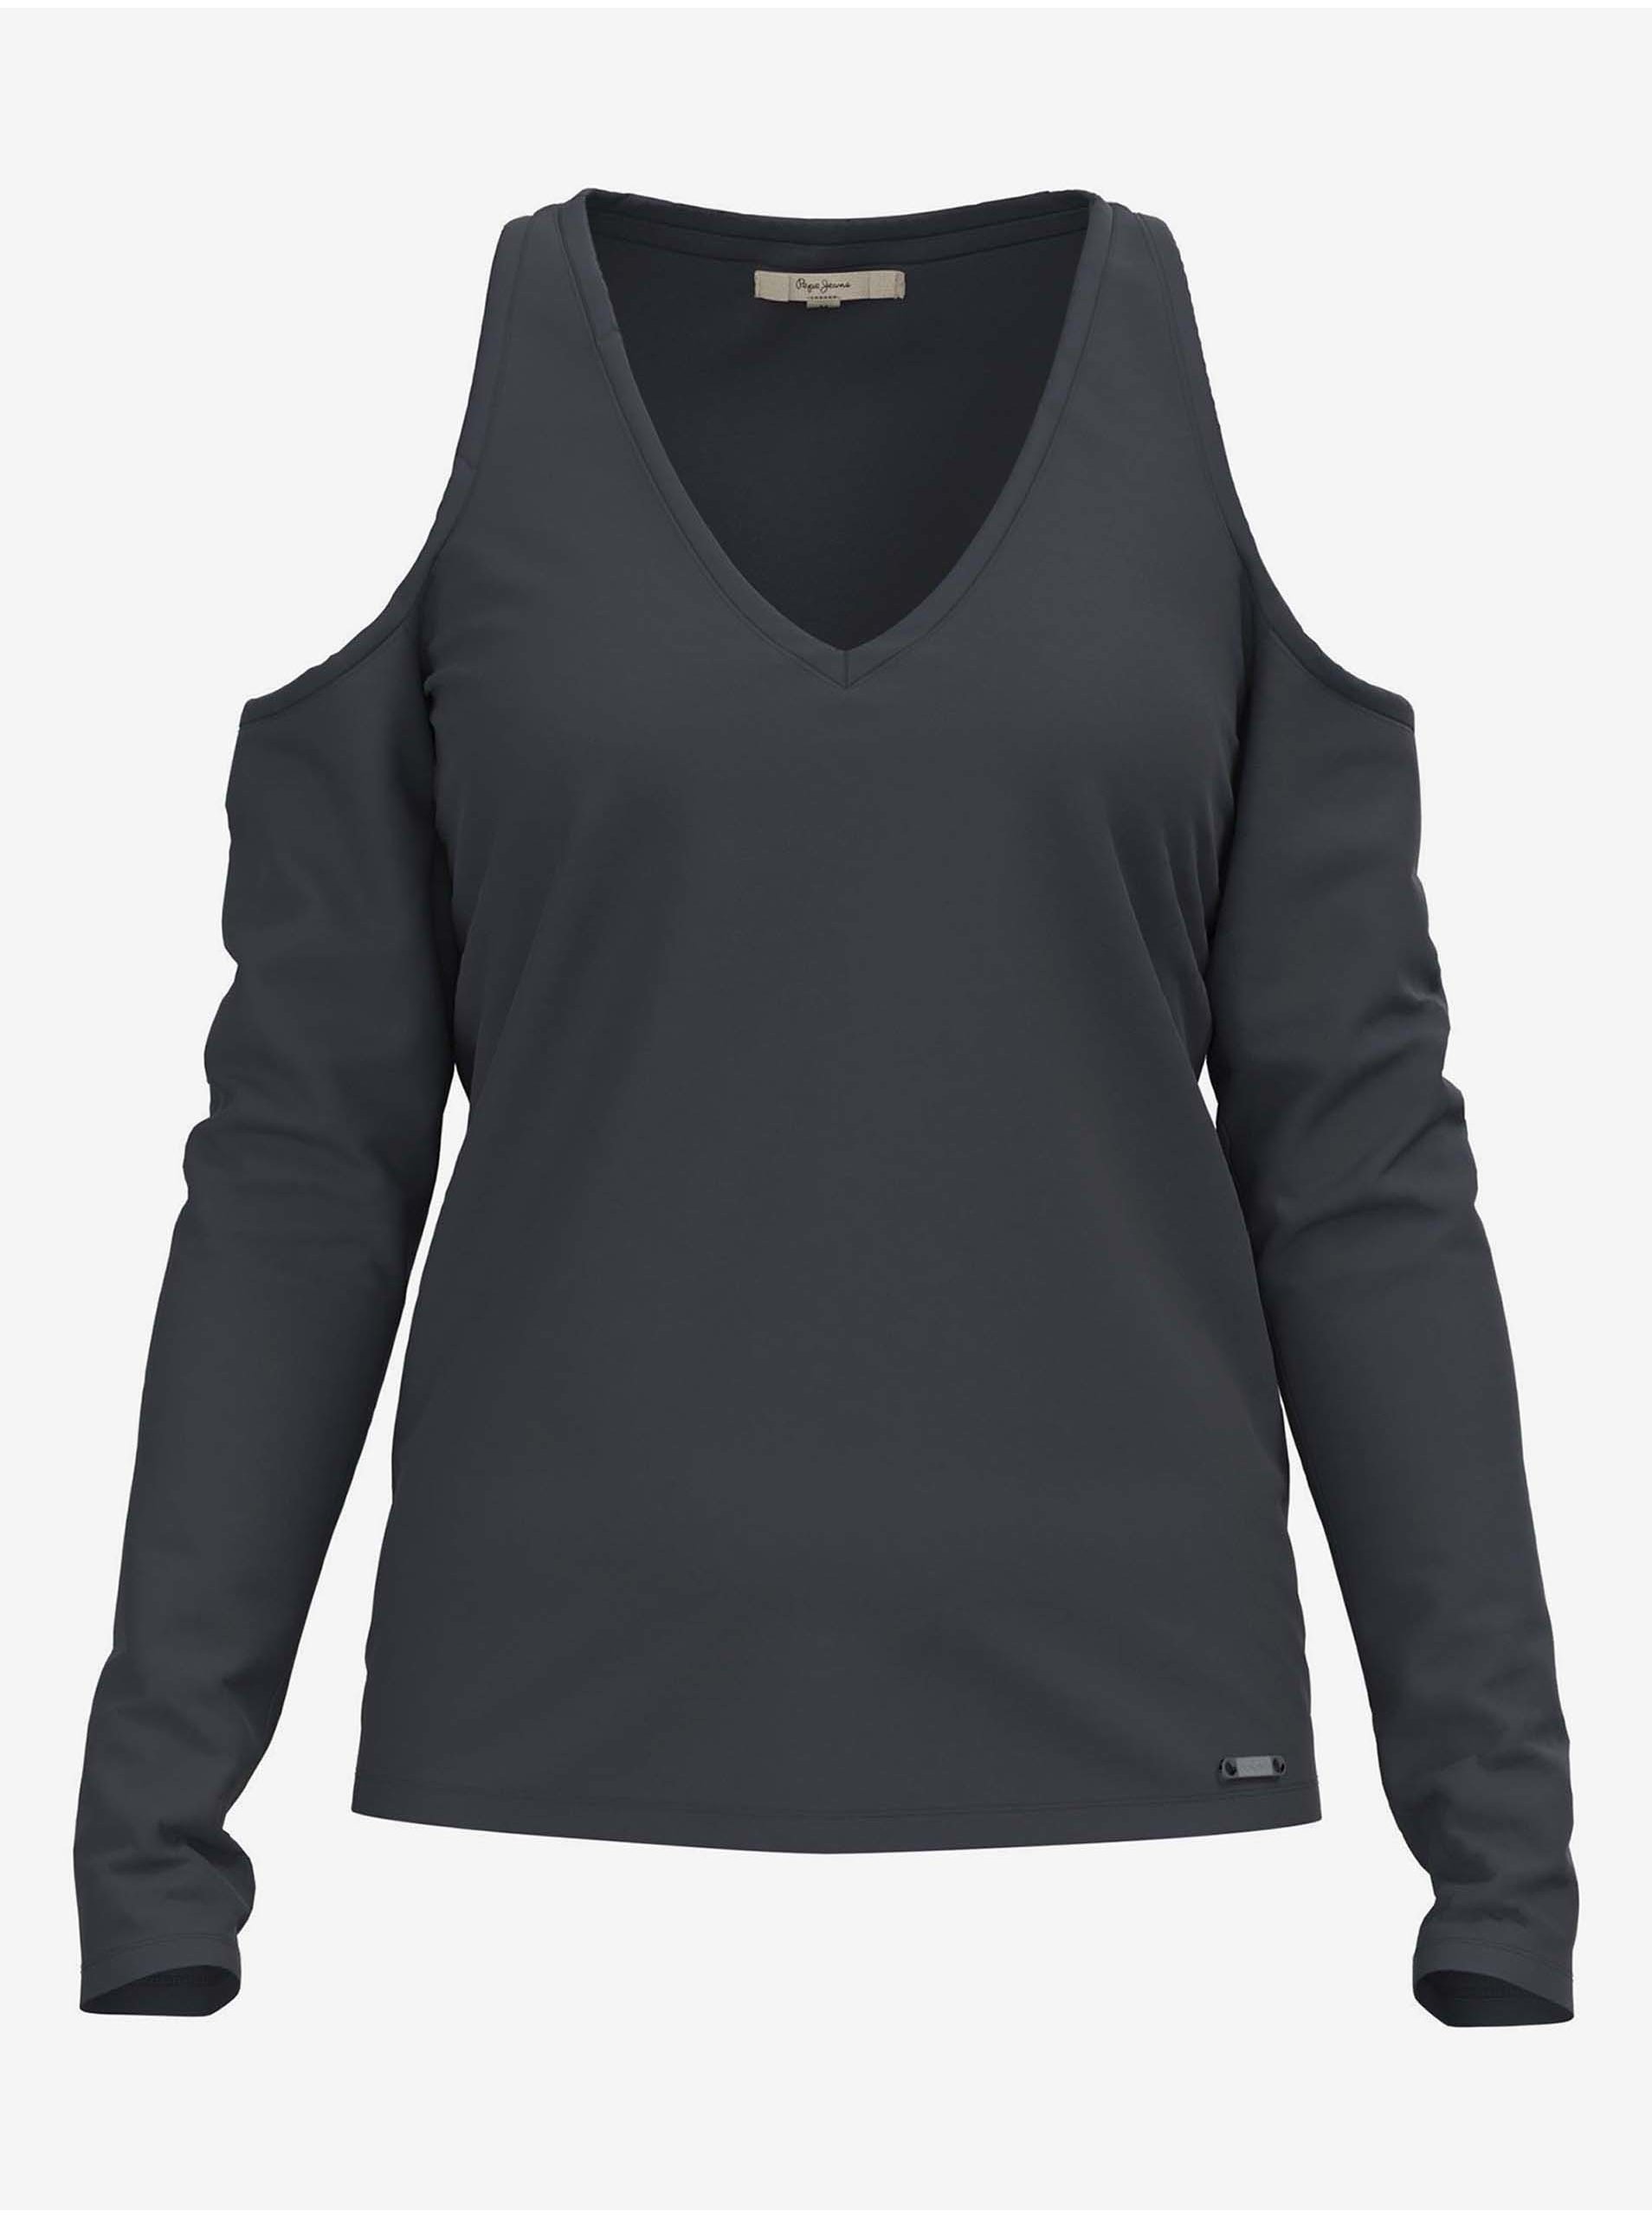 E-shop Tmavě šedé dámské tričko s odhalenými rameny Pepe Jeans Cora